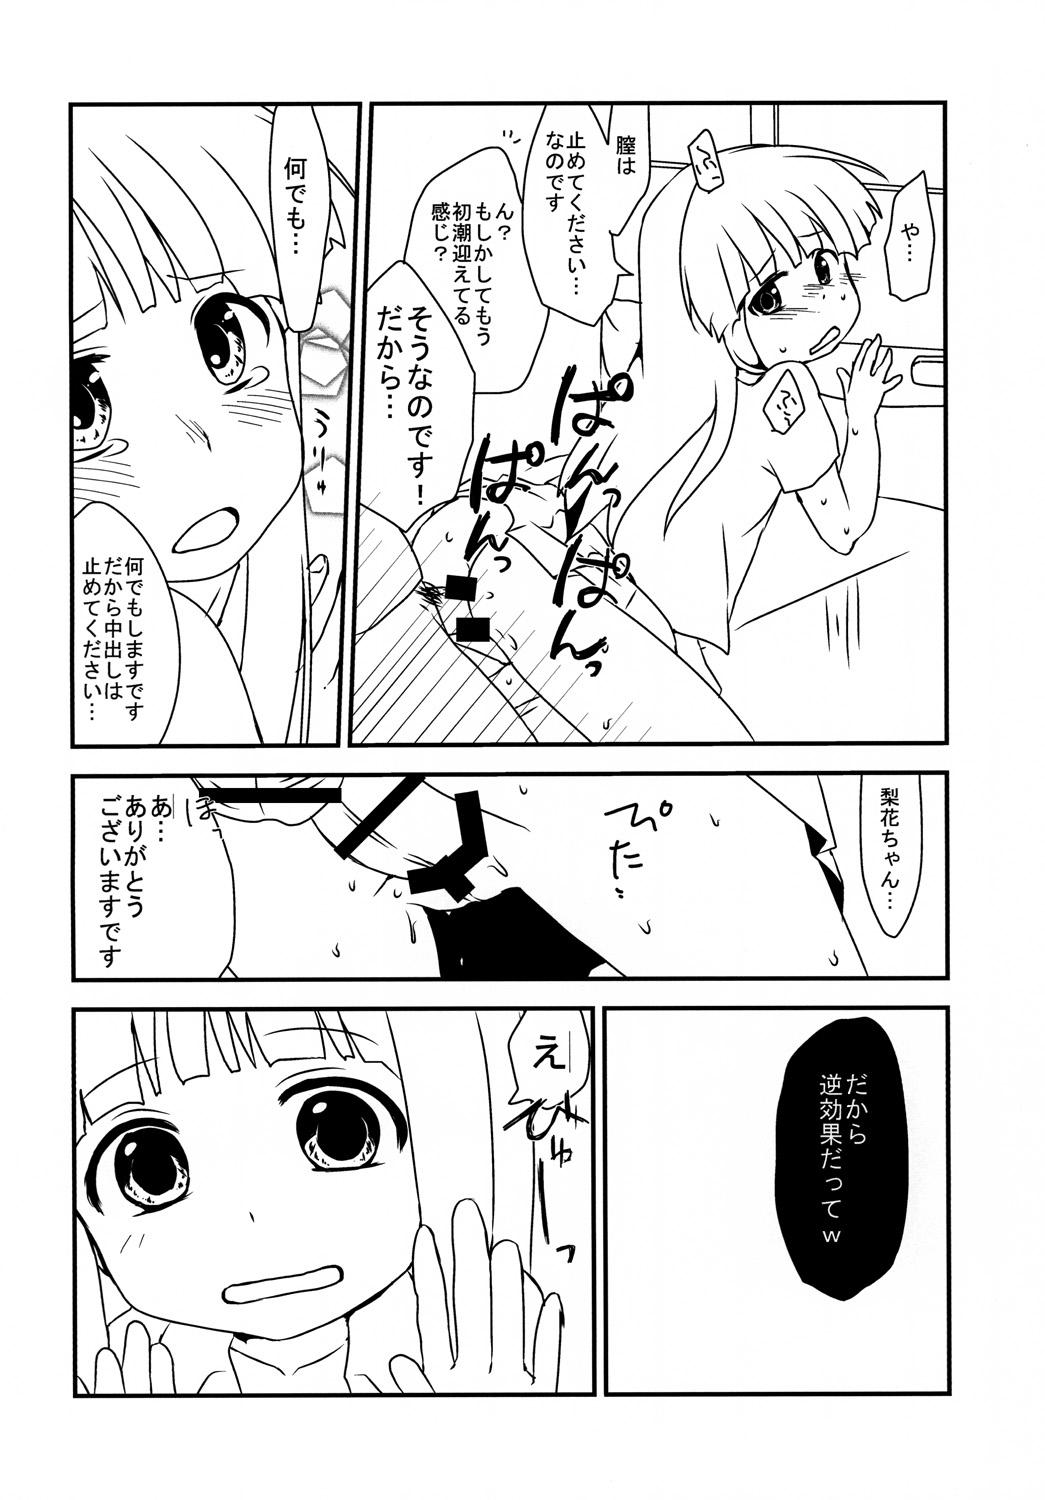 Rubia The Littl Girl Threatend - Higurashi no naku koro ni Couple Porn - Page 13